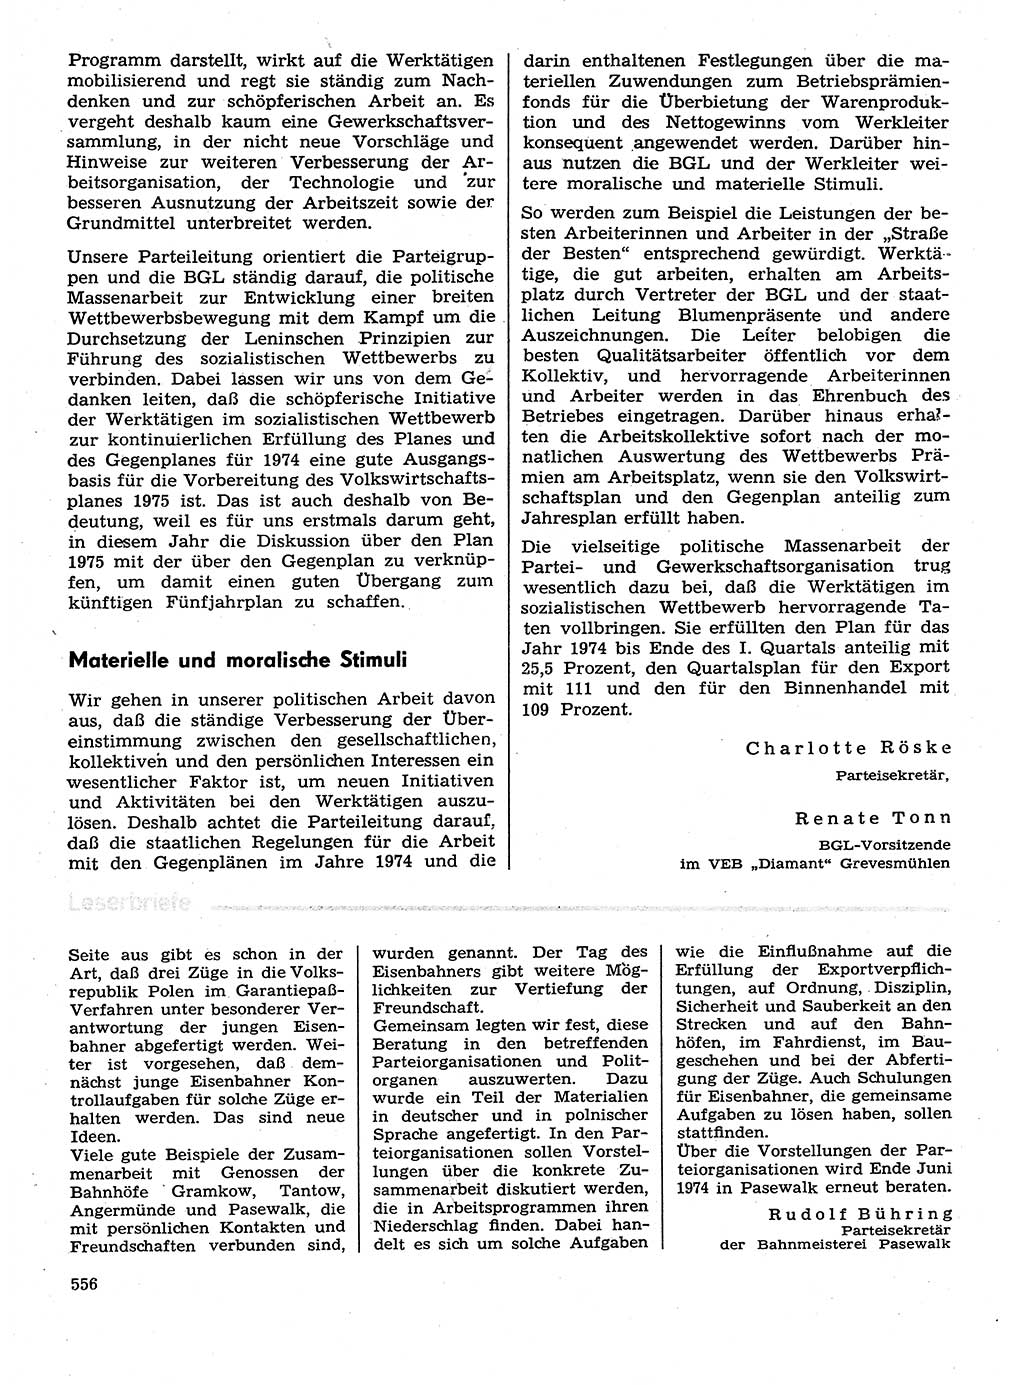 Neuer Weg (NW), Organ des Zentralkomitees (ZK) der SED (Sozialistische Einheitspartei Deutschlands) für Fragen des Parteilebens, 29. Jahrgang [Deutsche Demokratische Republik (DDR)] 1974, Seite 556 (NW ZK SED DDR 1974, S. 556)